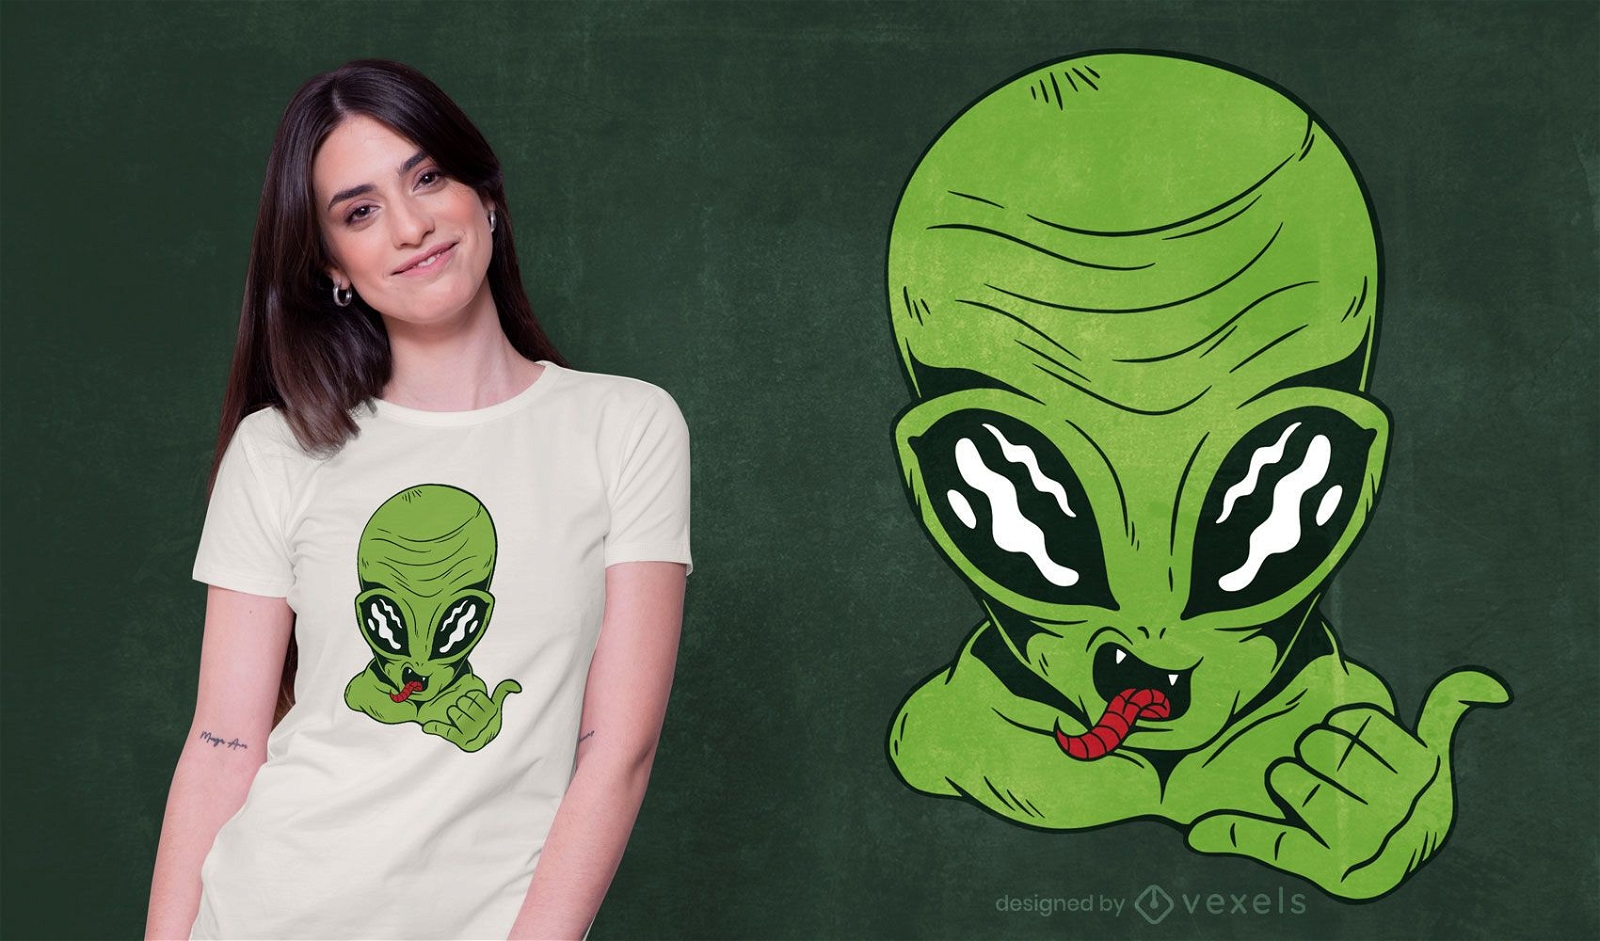 Diseño de camiseta alien shaka sign